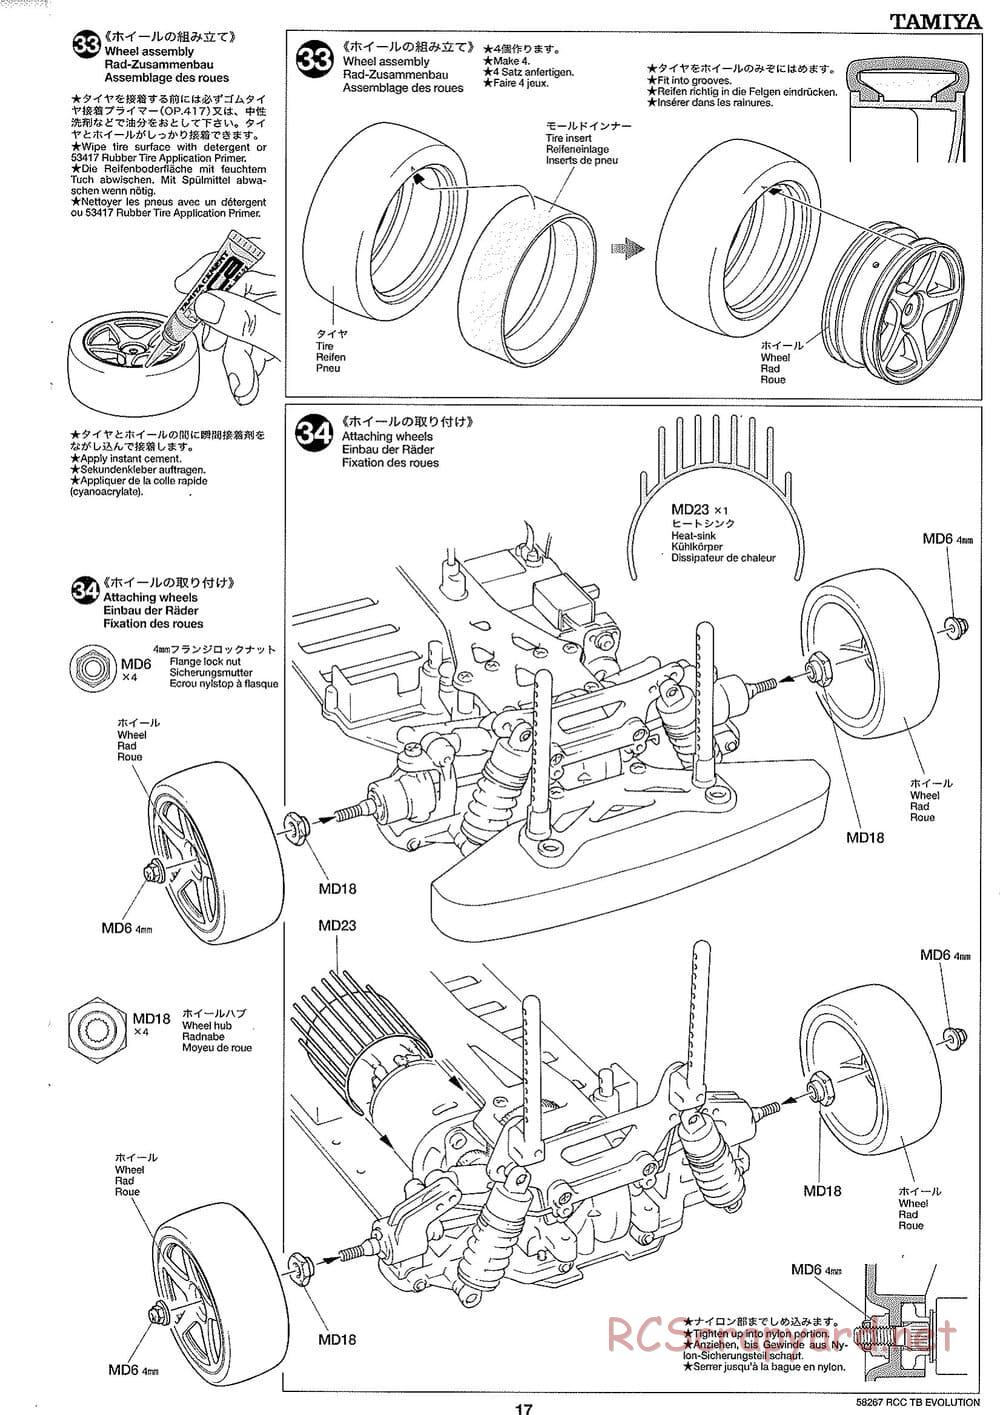 Tamiya - TB Evolution Chassis - Manual - Page 17